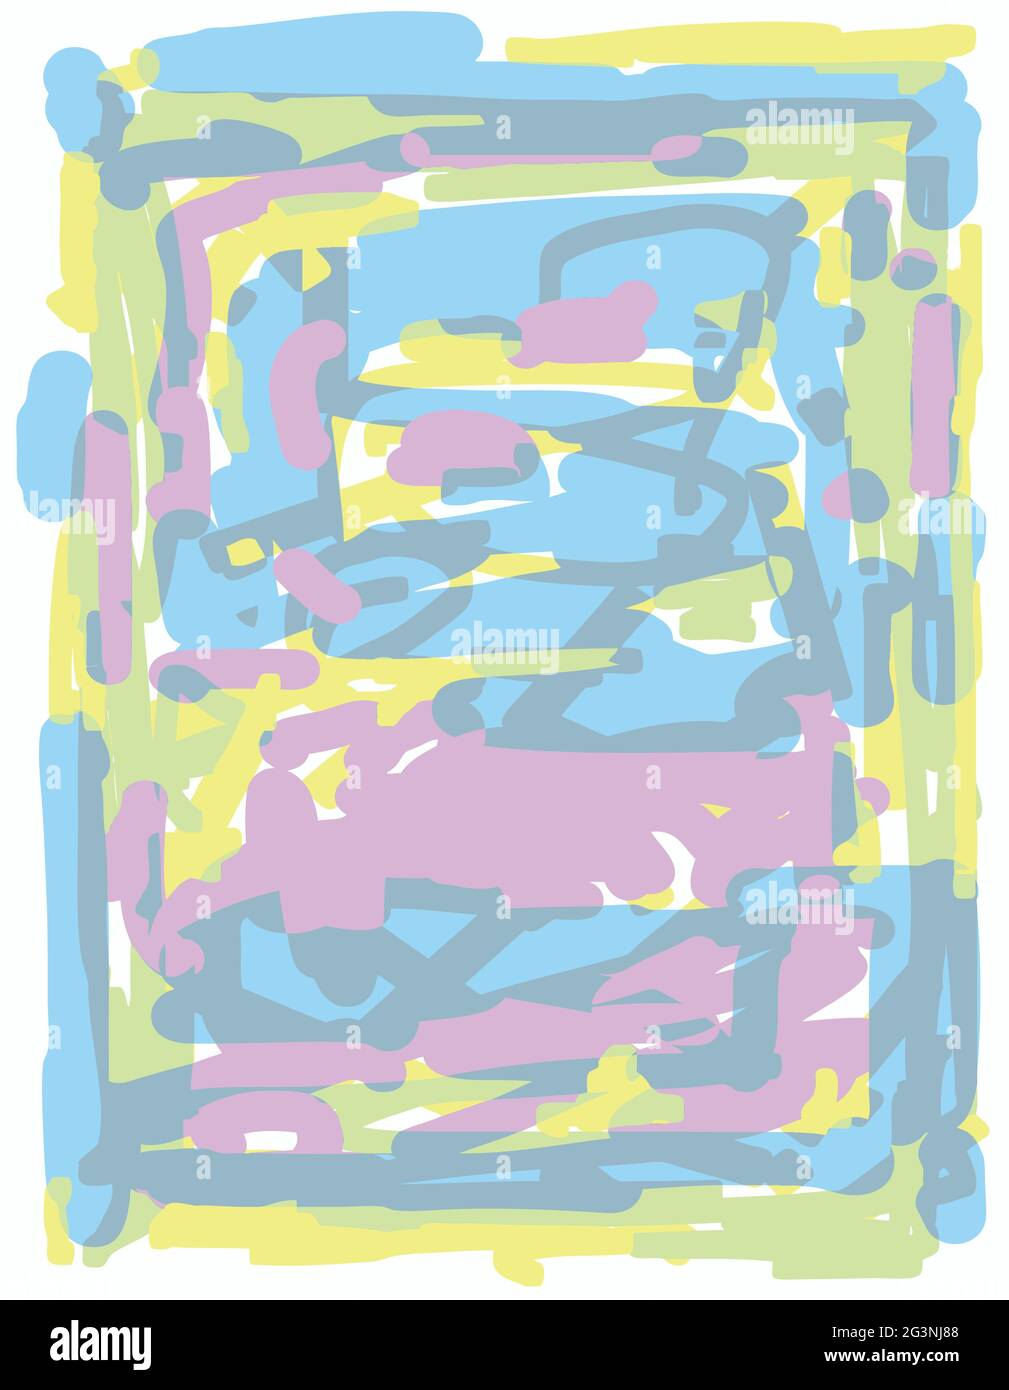 Motif pop Doodle dessiné à la main, couleurs décolorées, illustration abstraite de lignes vibrantes, croquis de bloc-notes de tablette Illustration de Vecteur